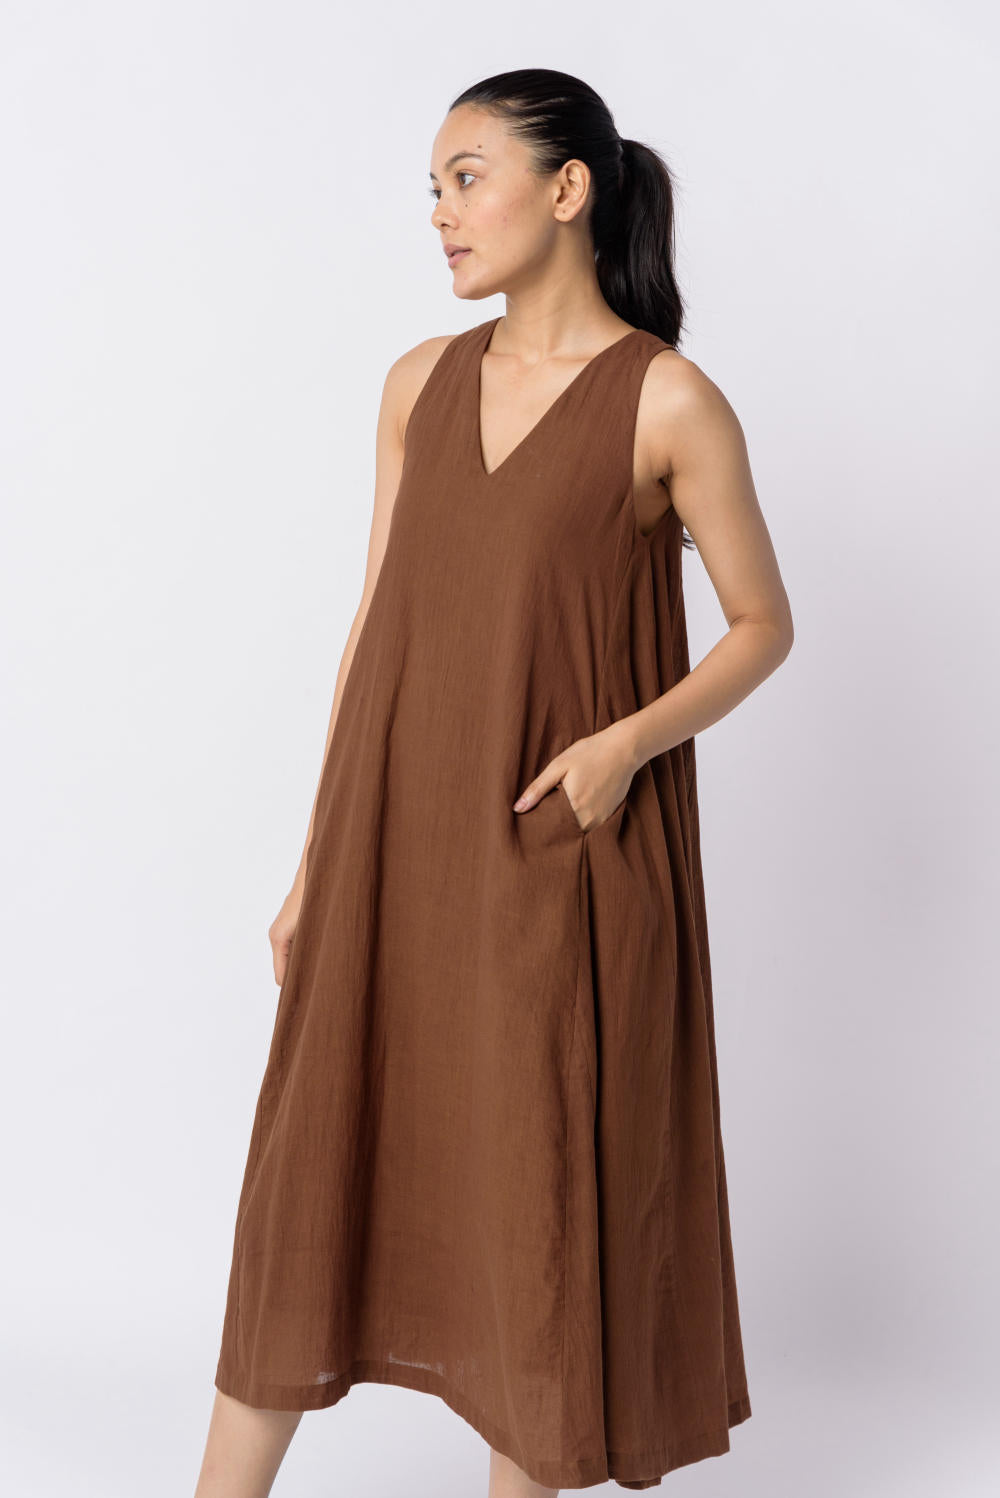 Cocoa brown voluminous dress - Brown